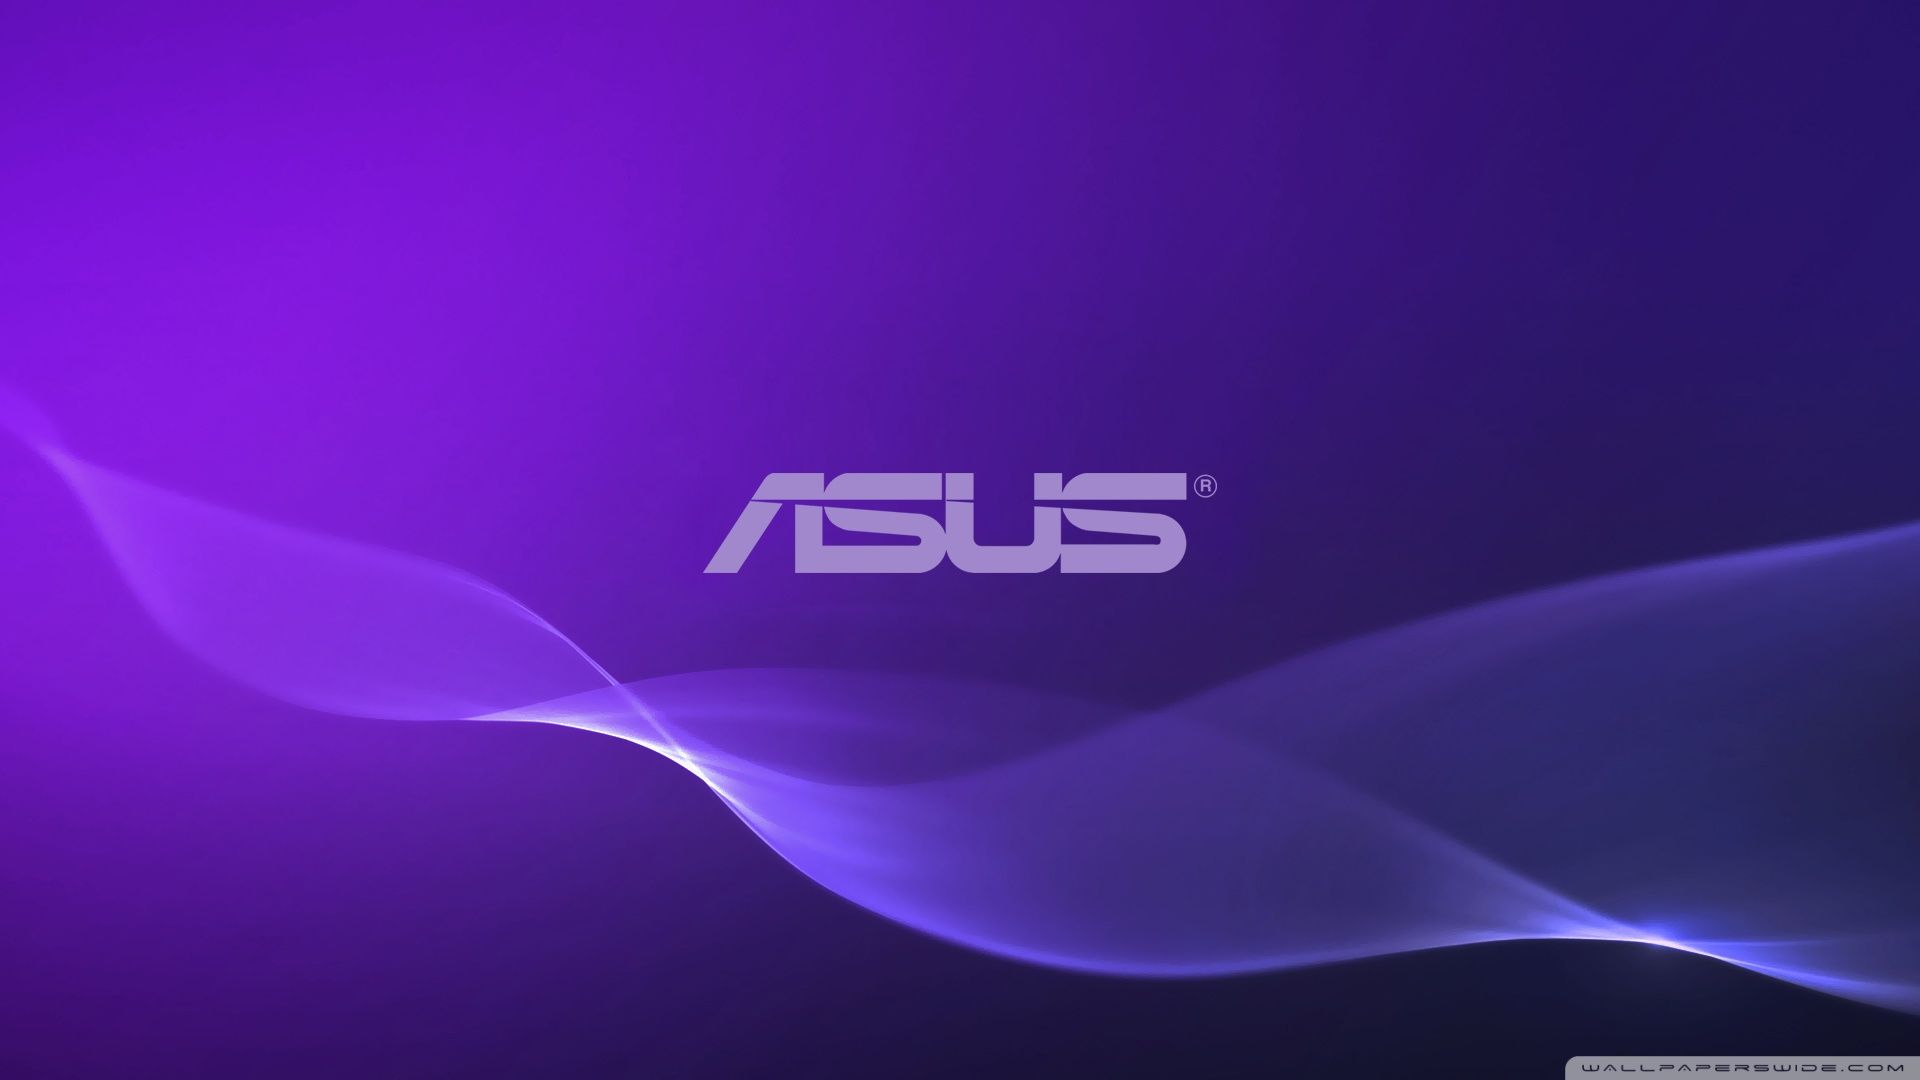 Asus Wallpaper - Asus Windows 10 Wallpaper Hd (# 76758) - HD